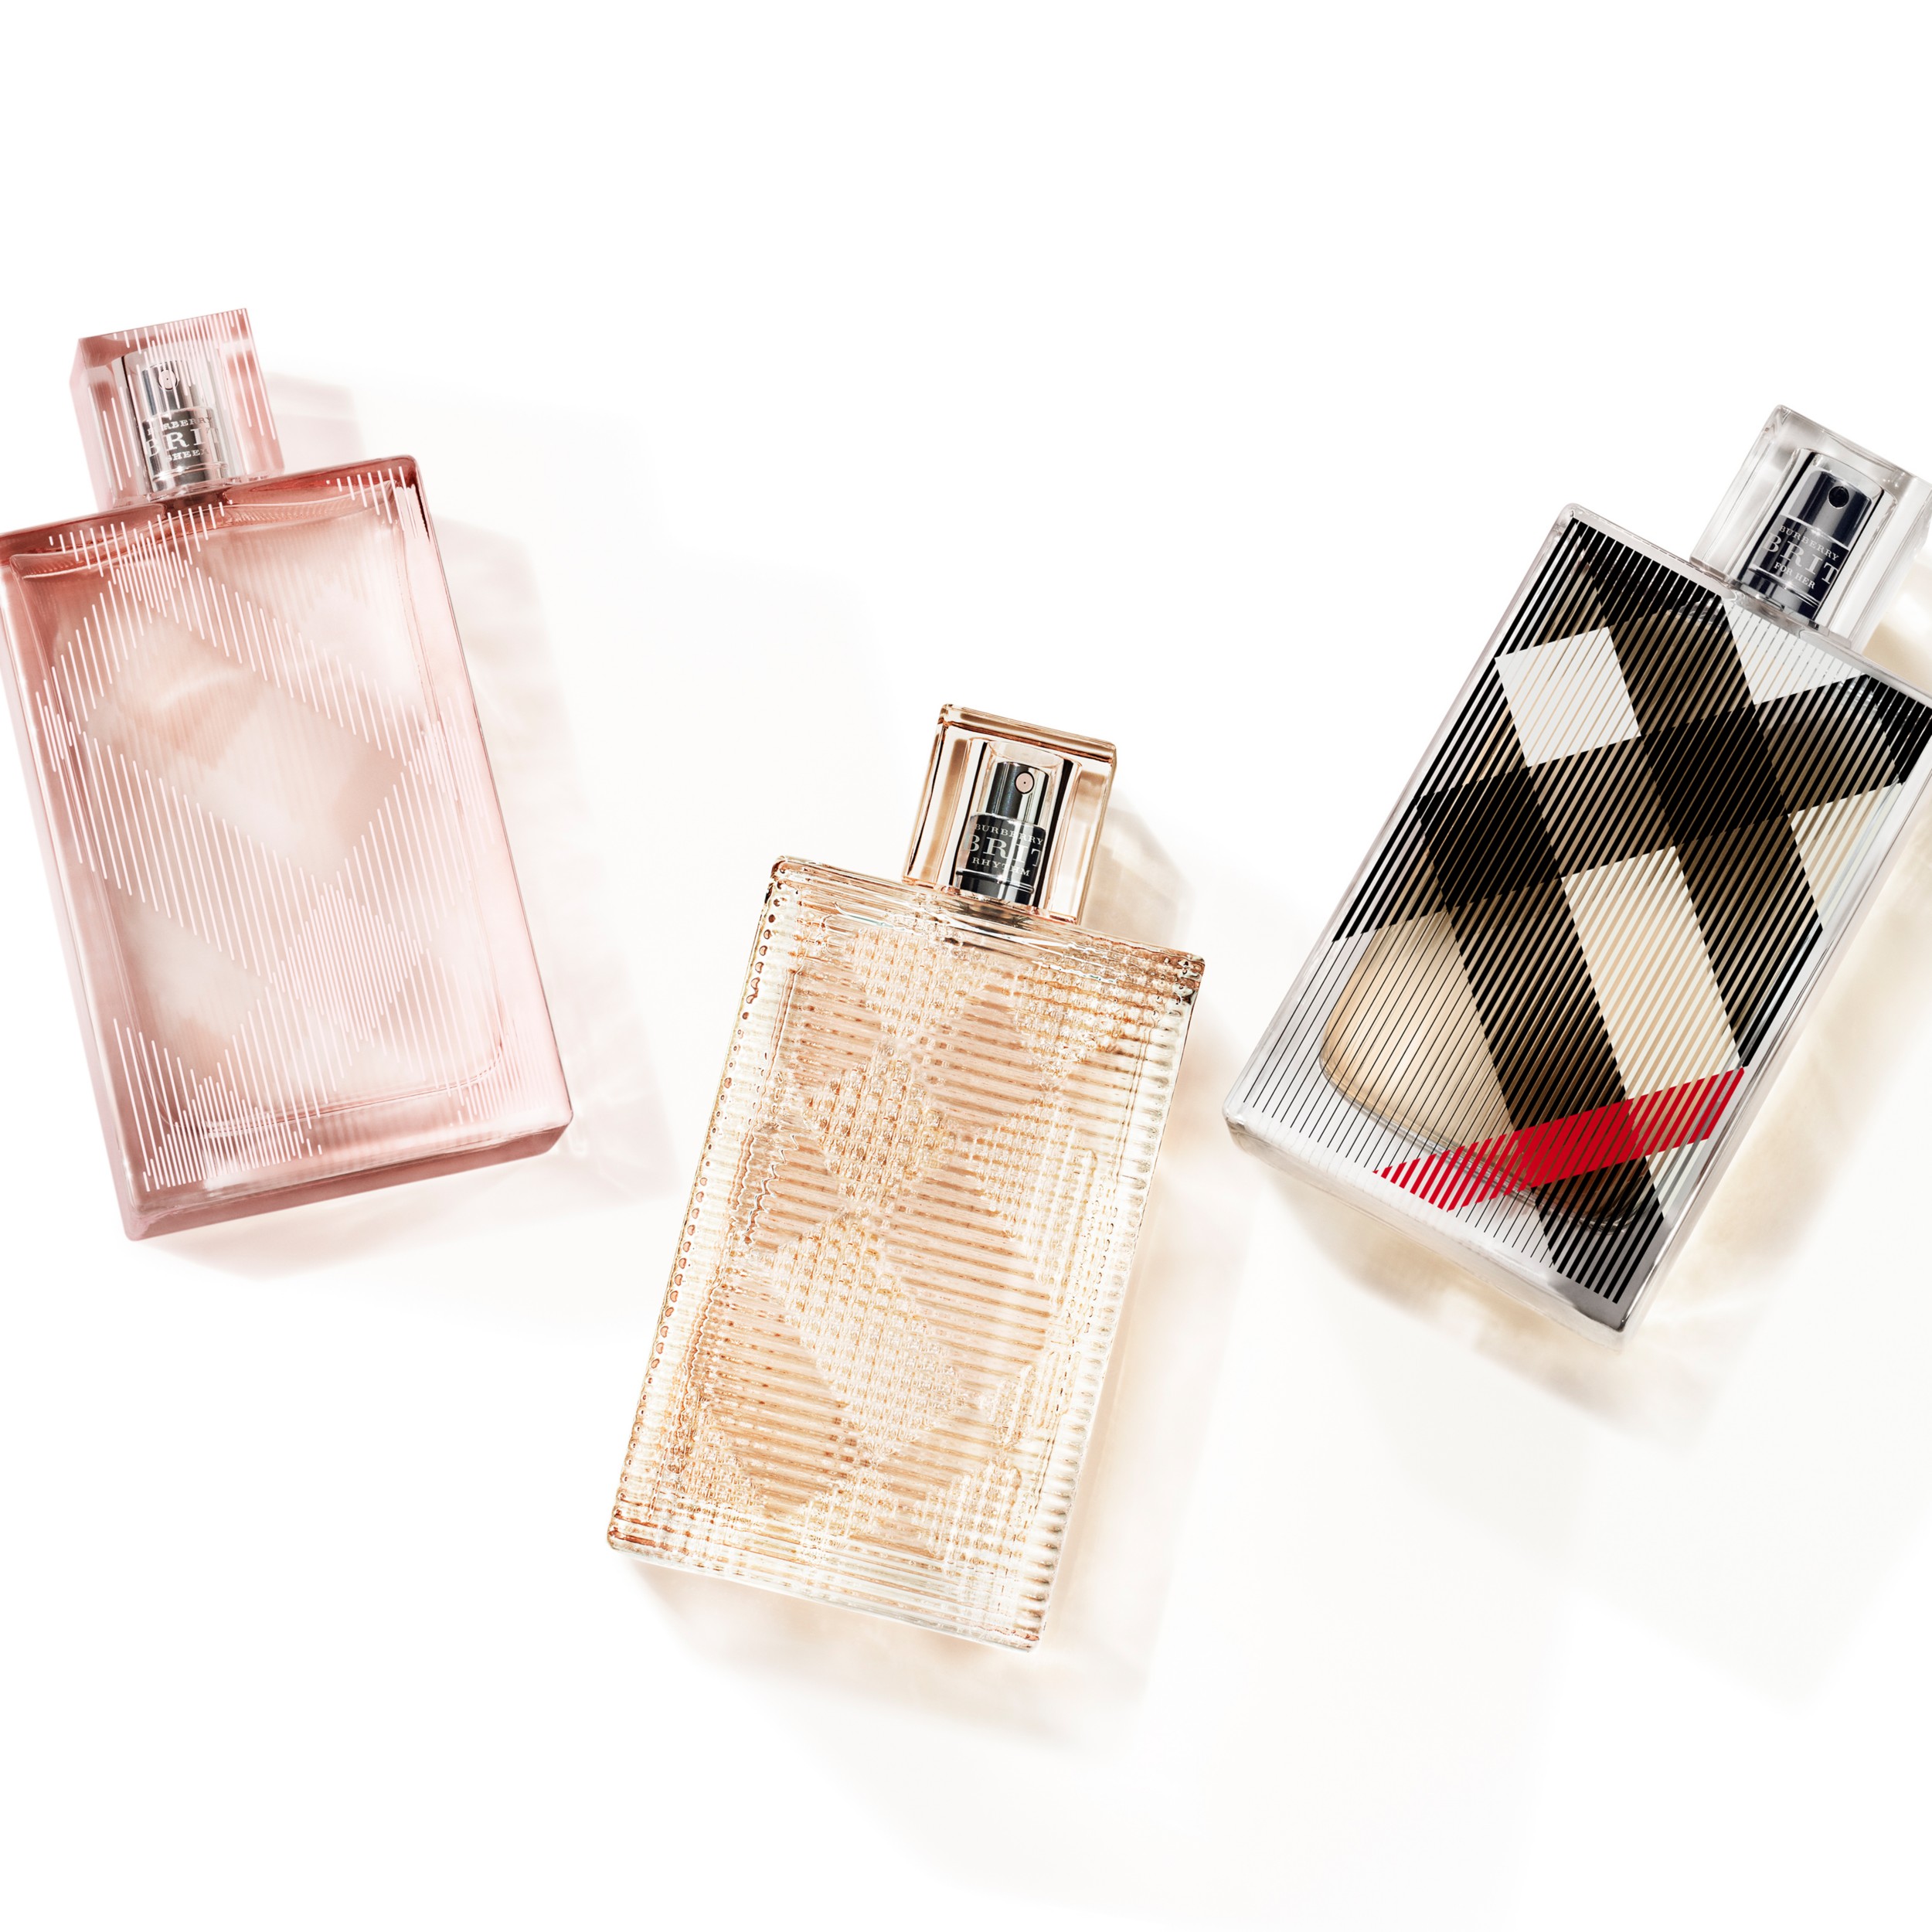 Perfume Burberry Brit Mujer Precio Cheapest Prices, 67% OFF 